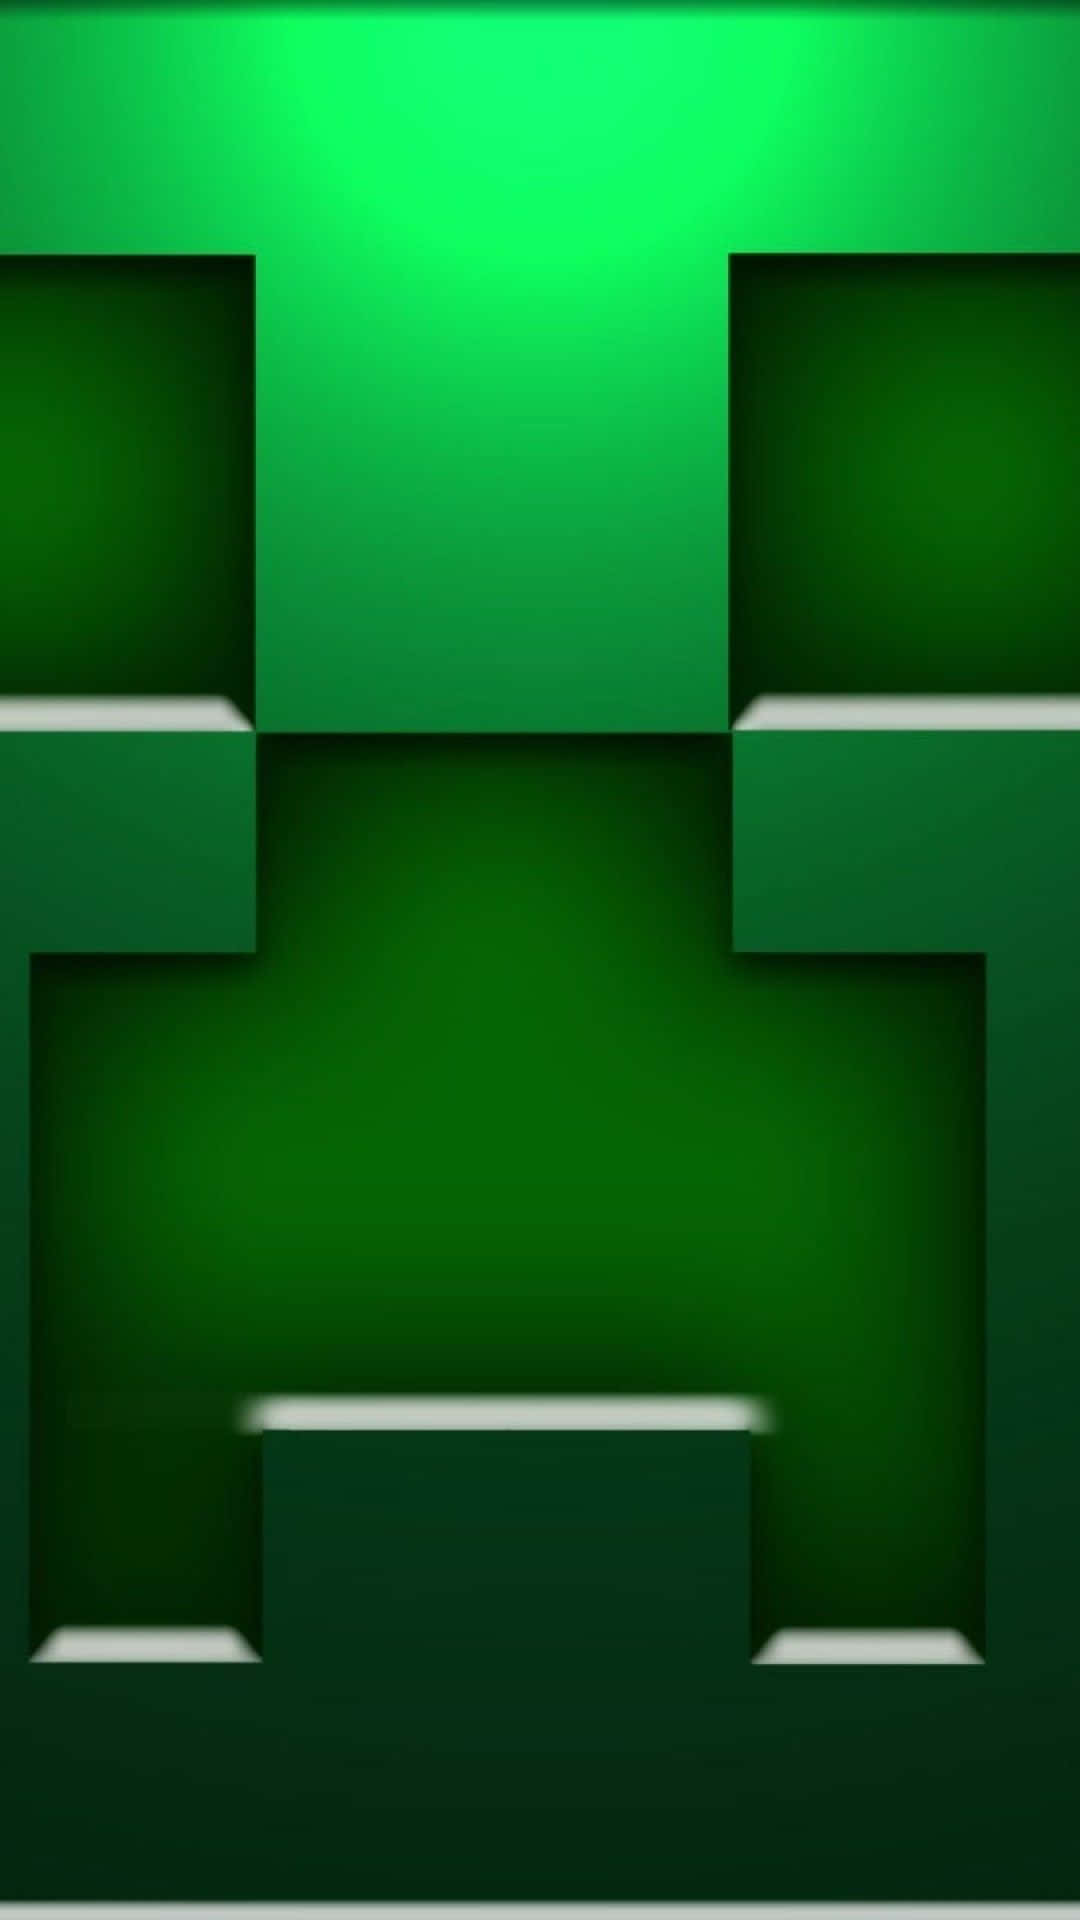 Fondode Pantalla Pixel 3xl De Minecraft Con La Cara Del Creeper